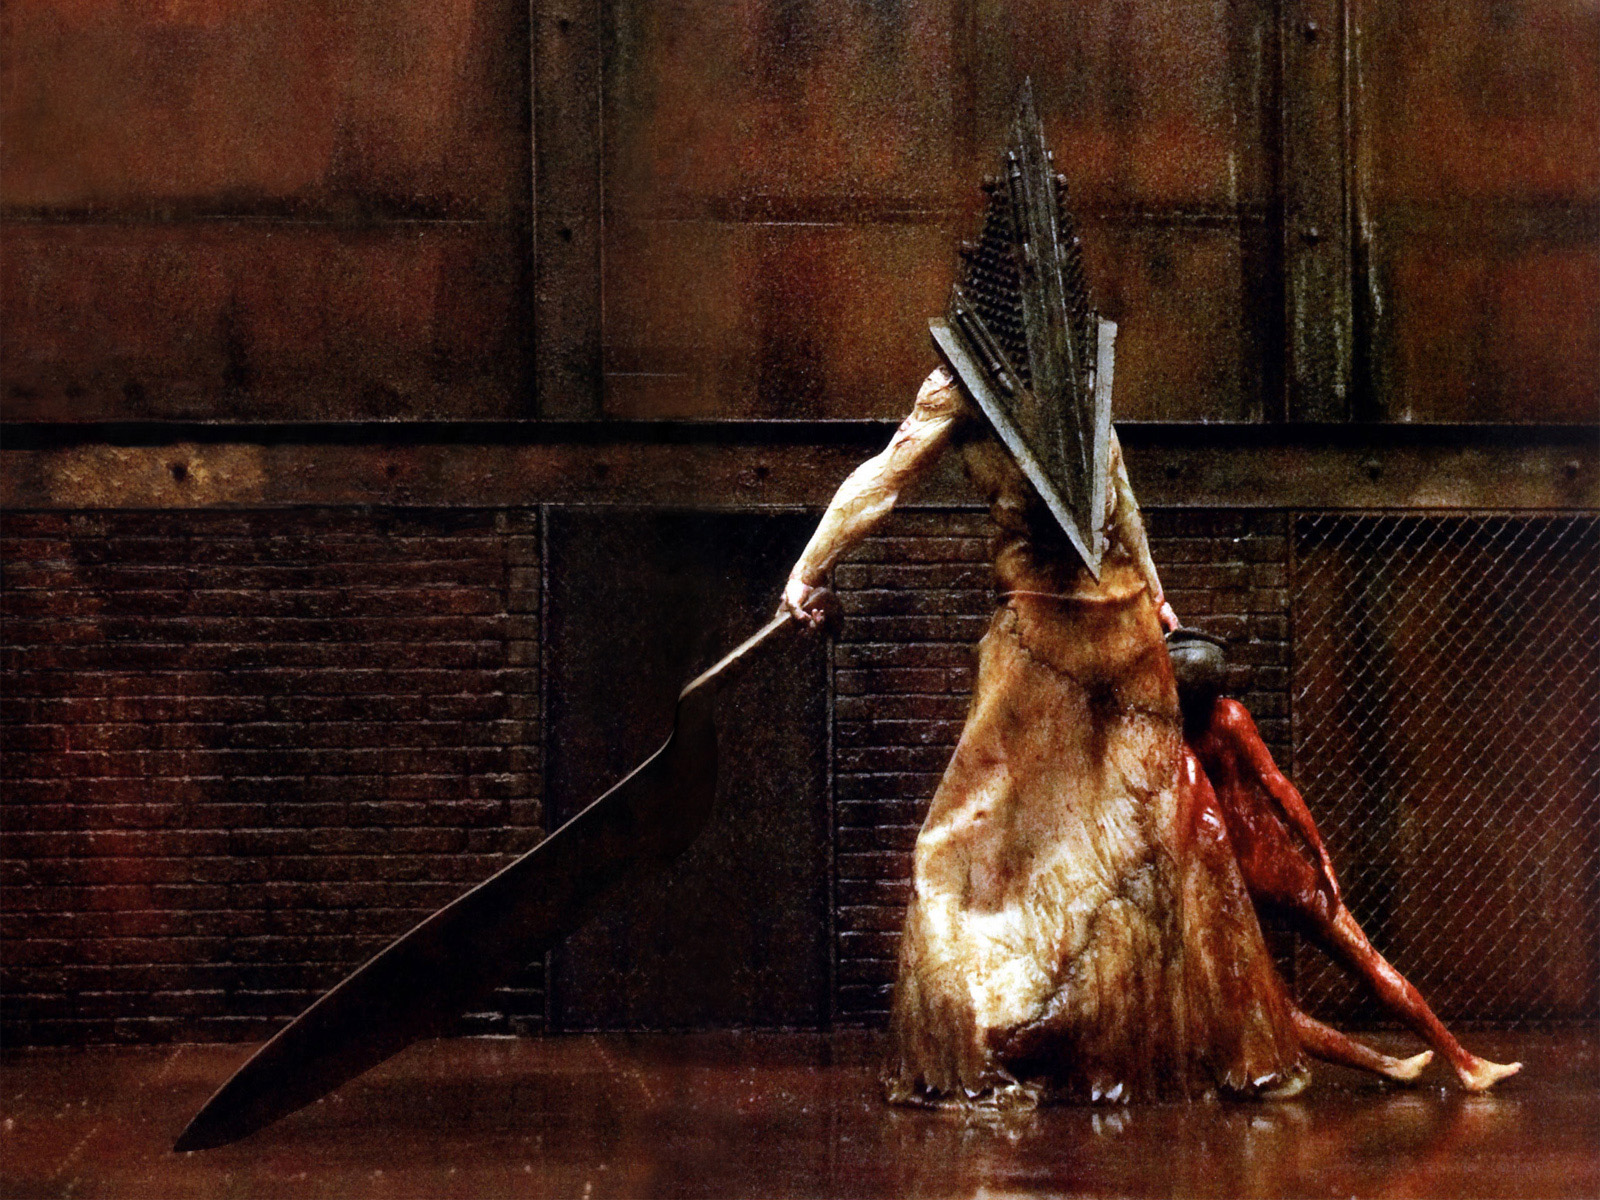 Melhores papéis de parede de Silent Hill para tela do telefone